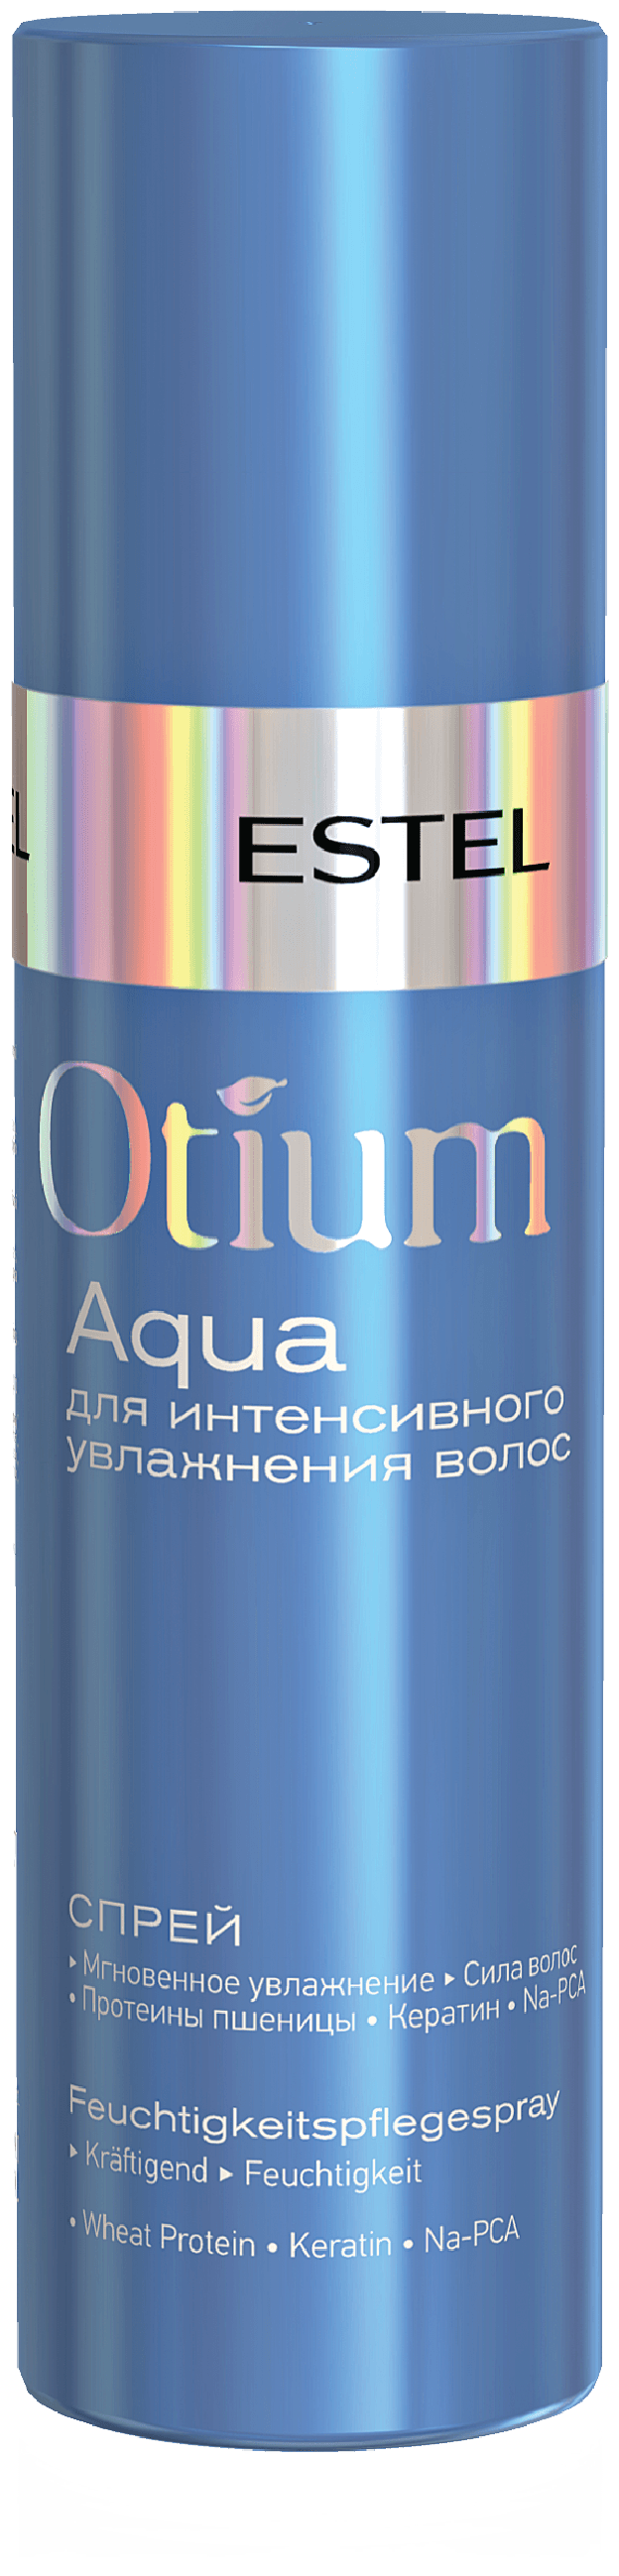 ESTEL Otium Aqua спрей для интенсивного увлажнения волос, 200 мл, спрей